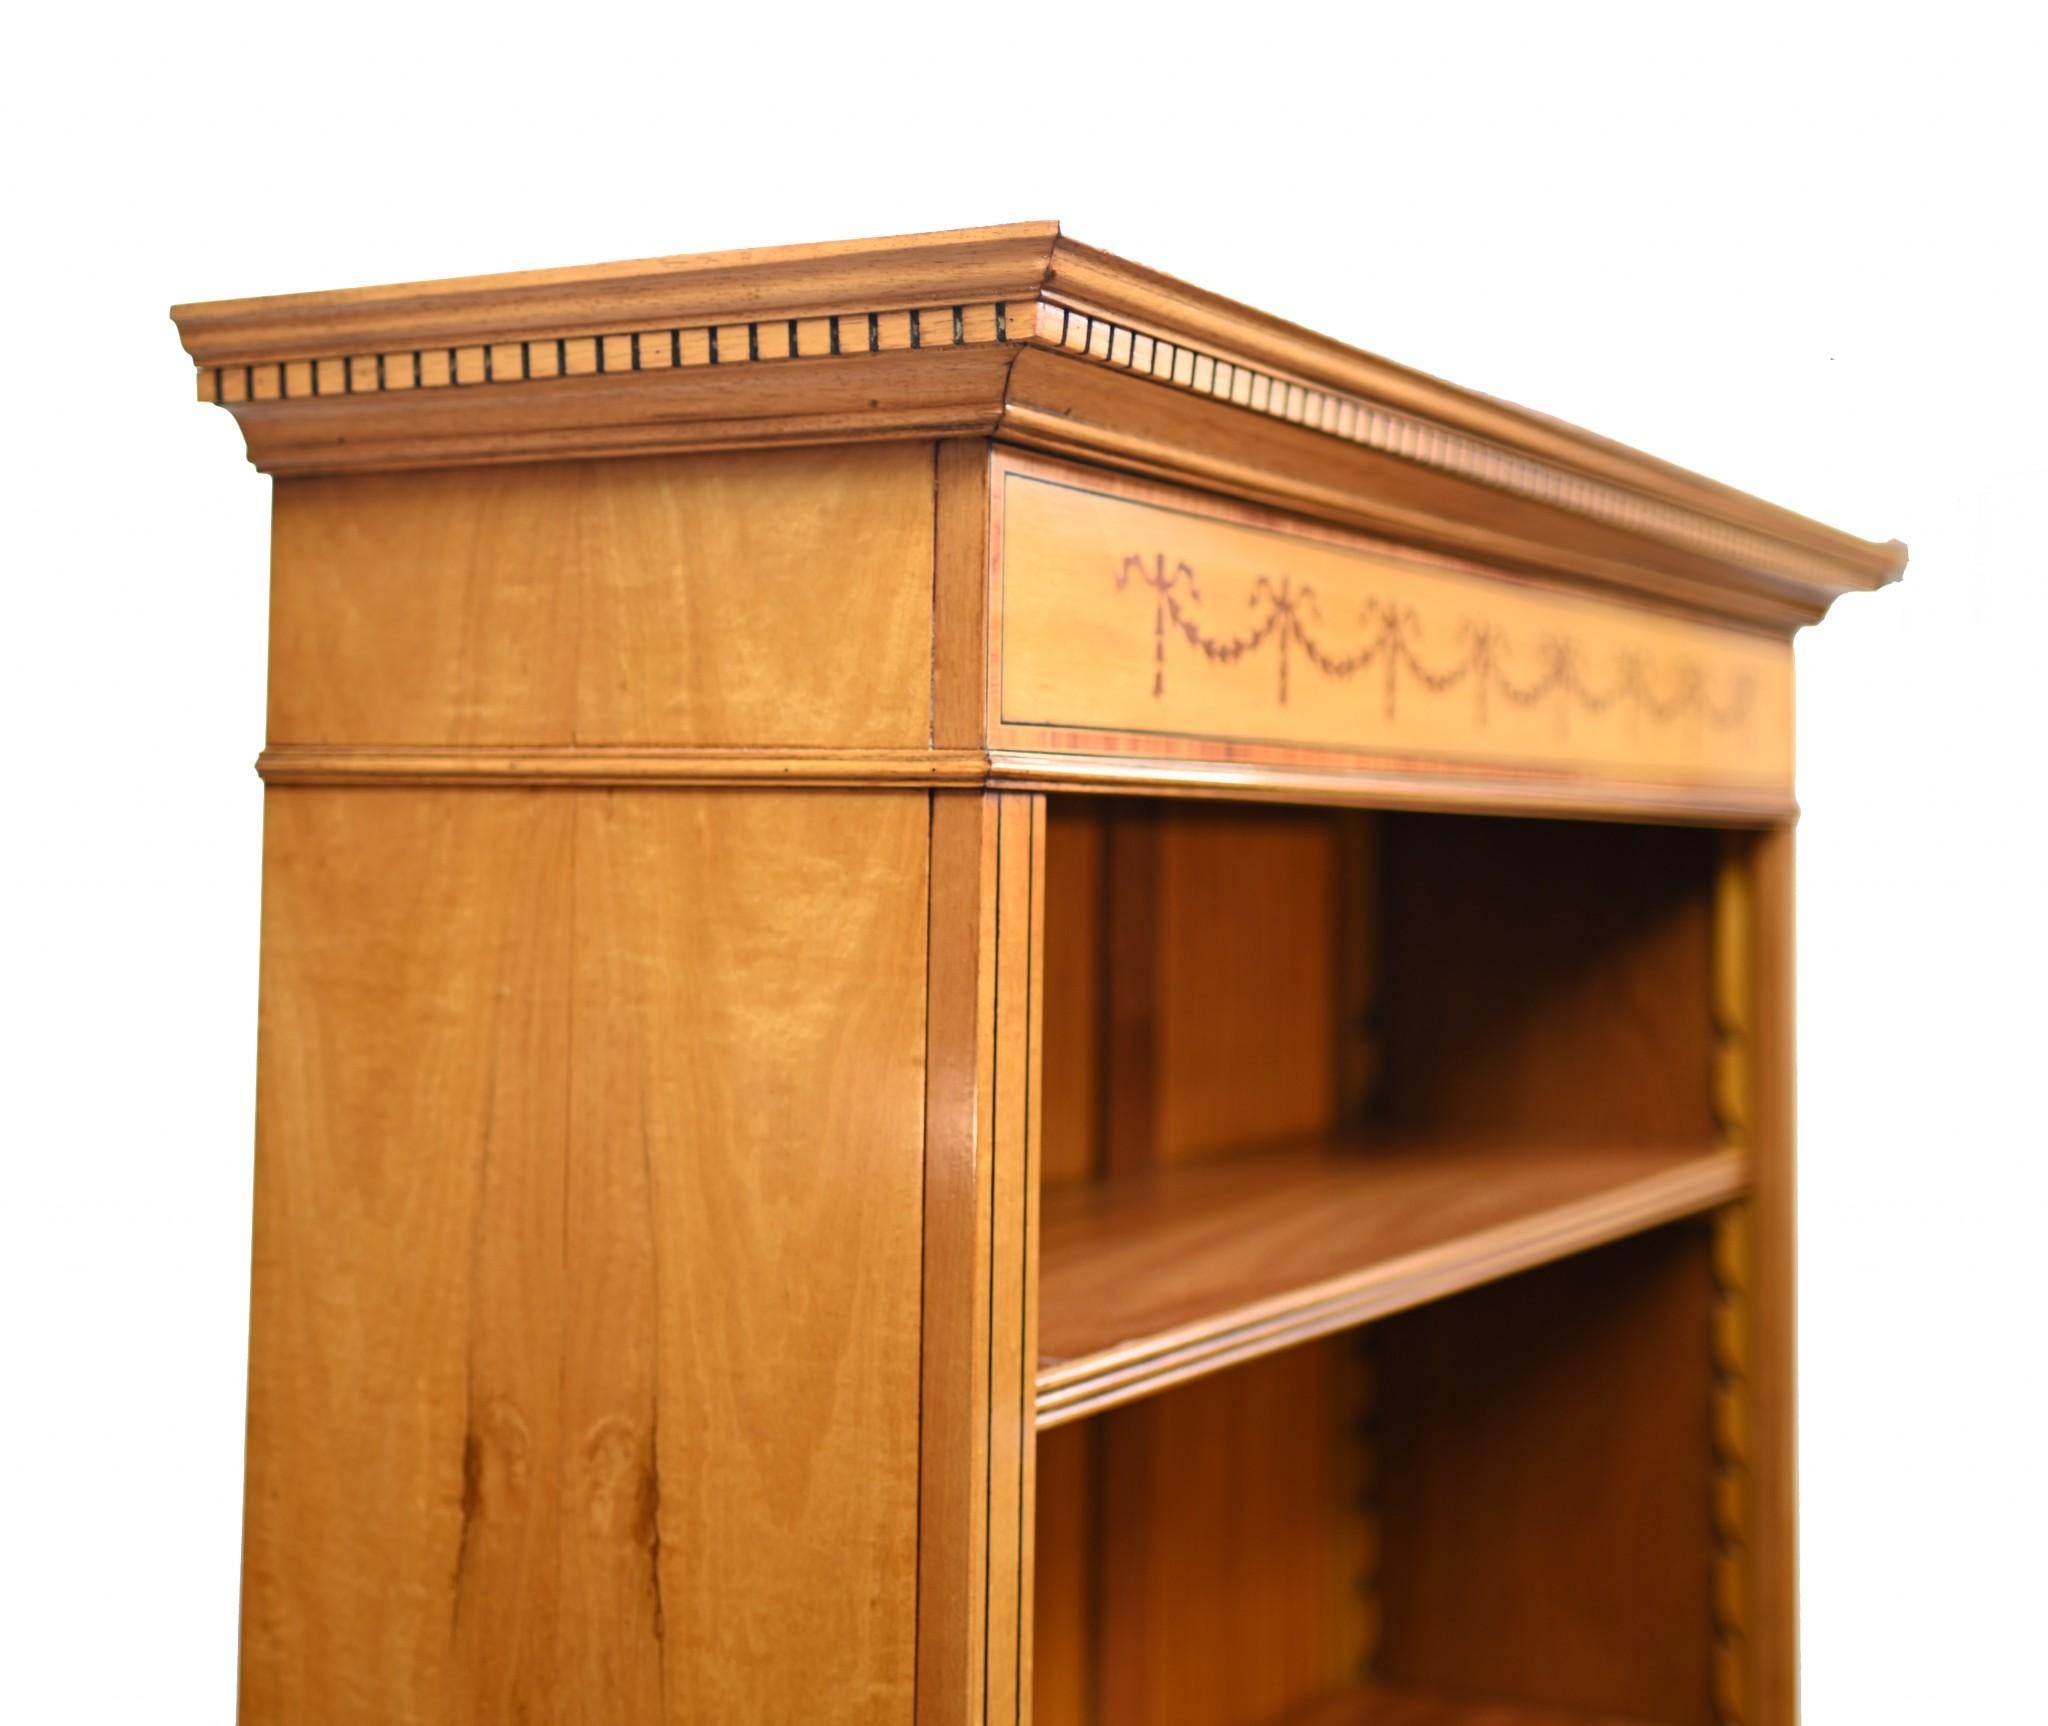 Fin du 20e siècle Paire de bibliothèques Regency ouvertes en bois de citronnier Sheraton de 7 pieds anglais en vente